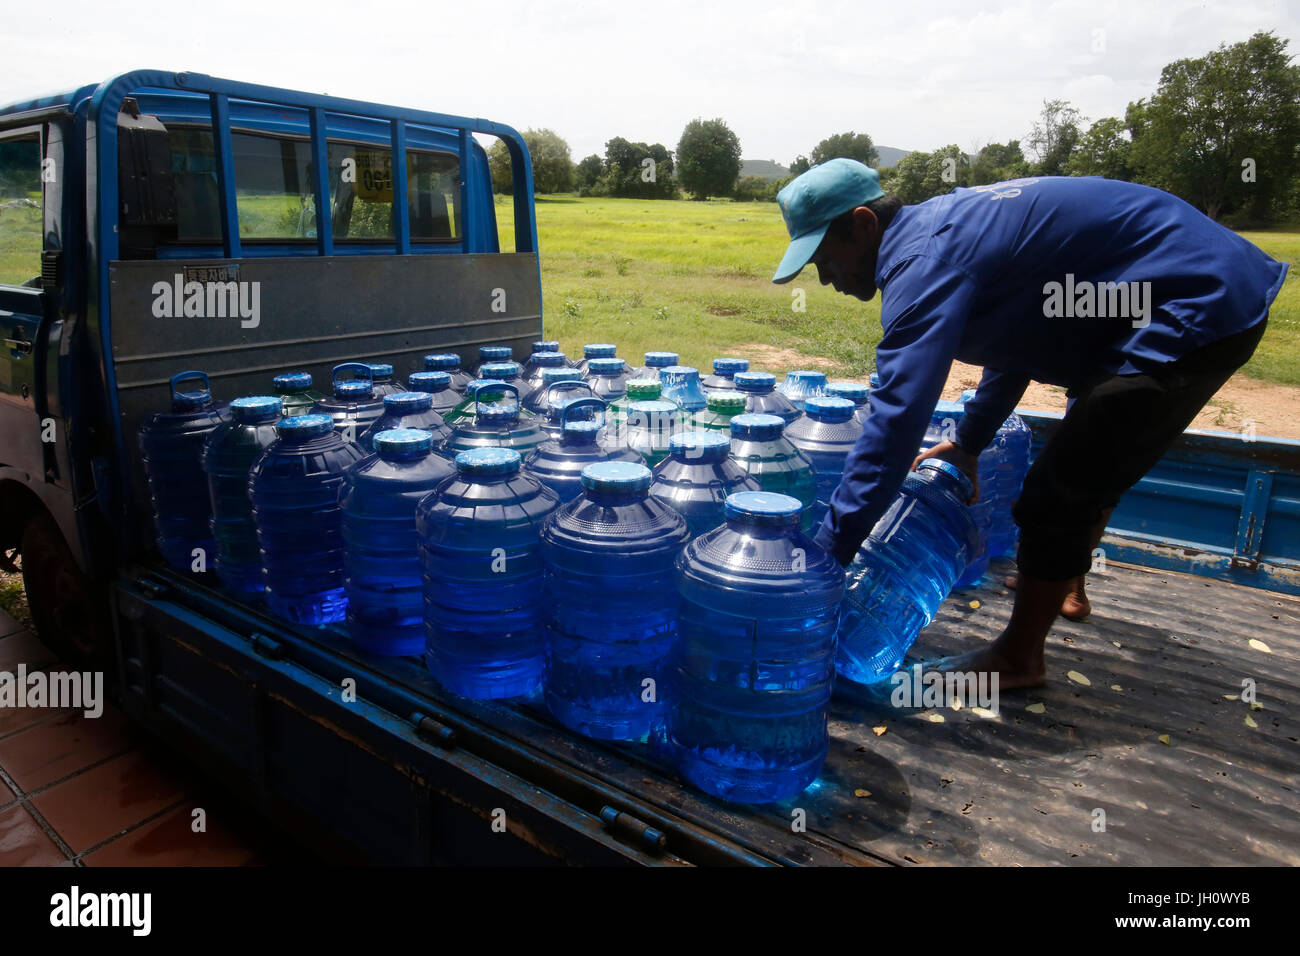 1001 Brunnen Wasser. Mitarbeiter Korbflaschen laden auf einen Lastwagen. Kambodscha. Stockfoto